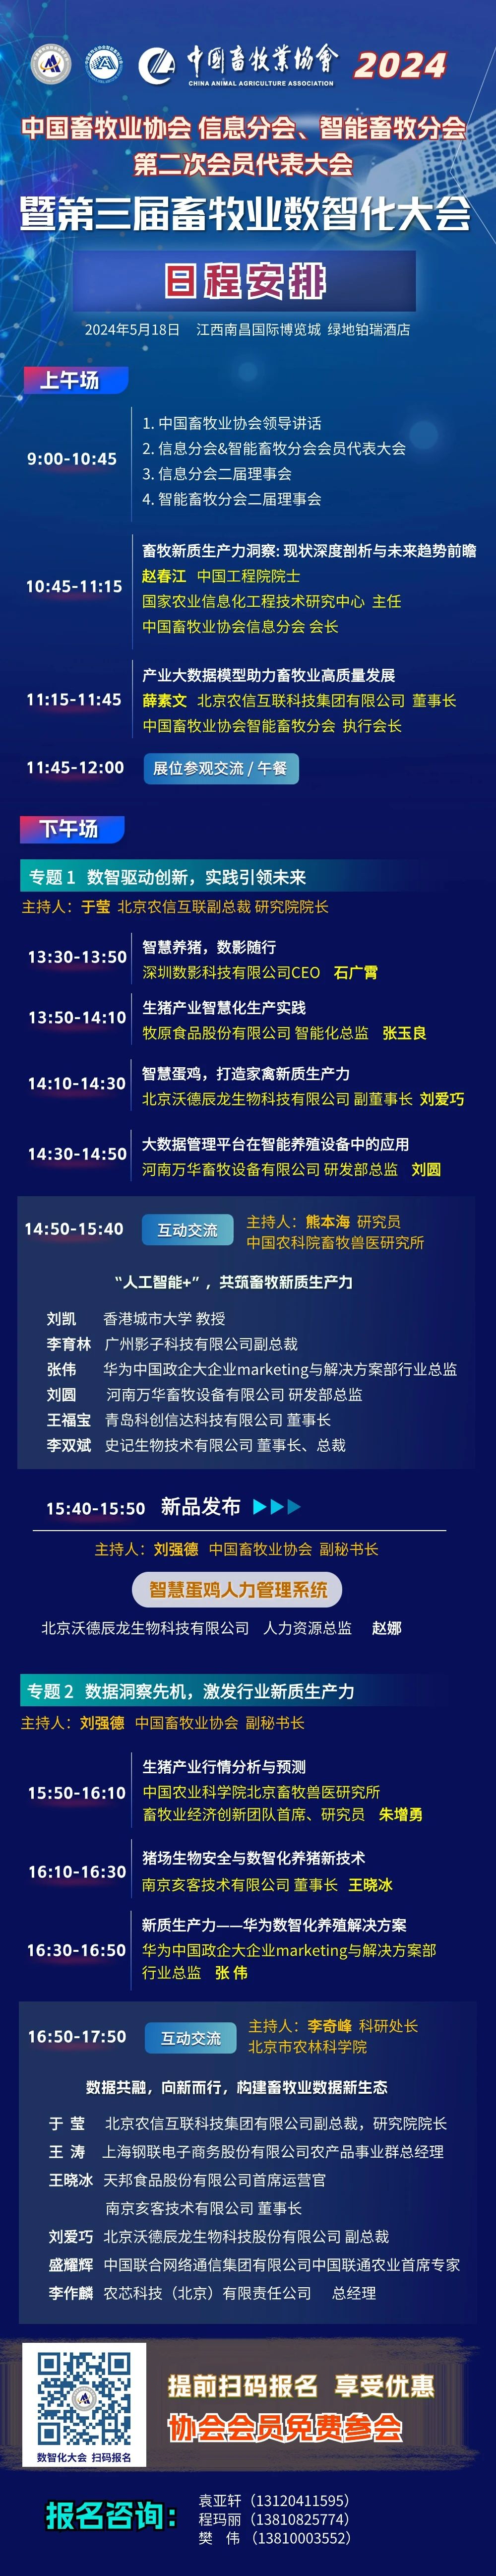 中国畜牧业协会第三届畜牧业数智化大会日程新鲜出炉